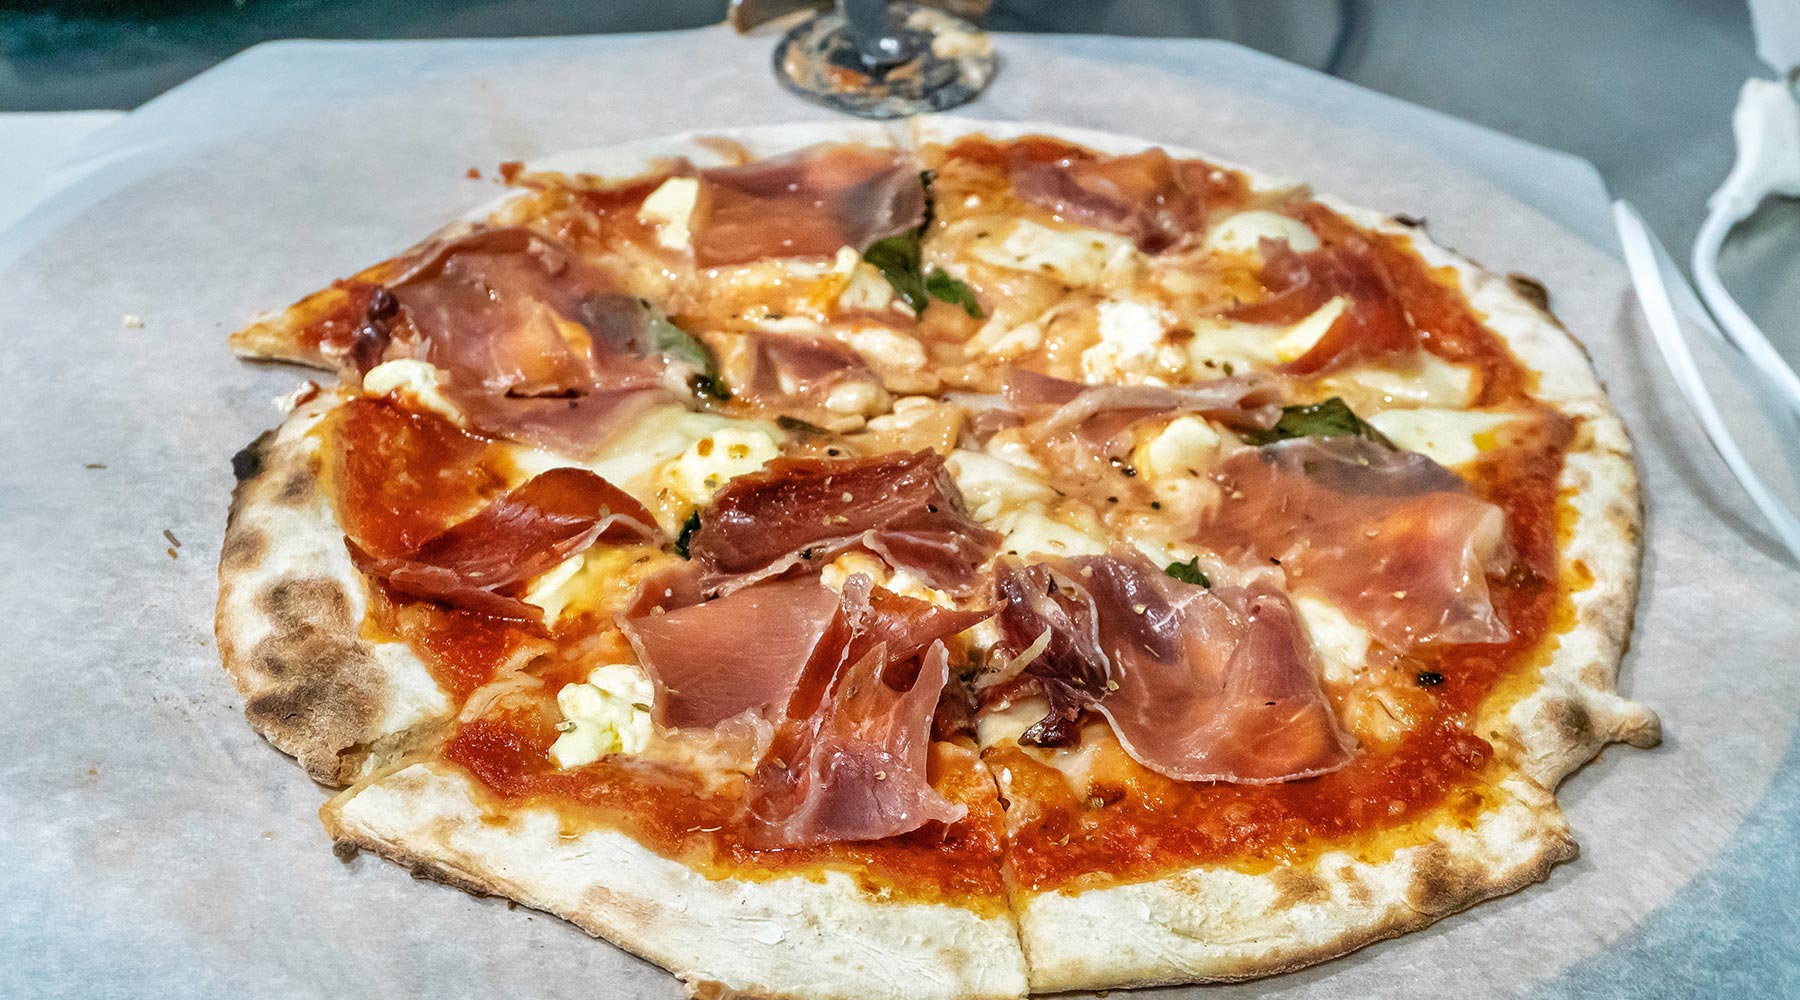 Las mejores pizzas de Zaragoza